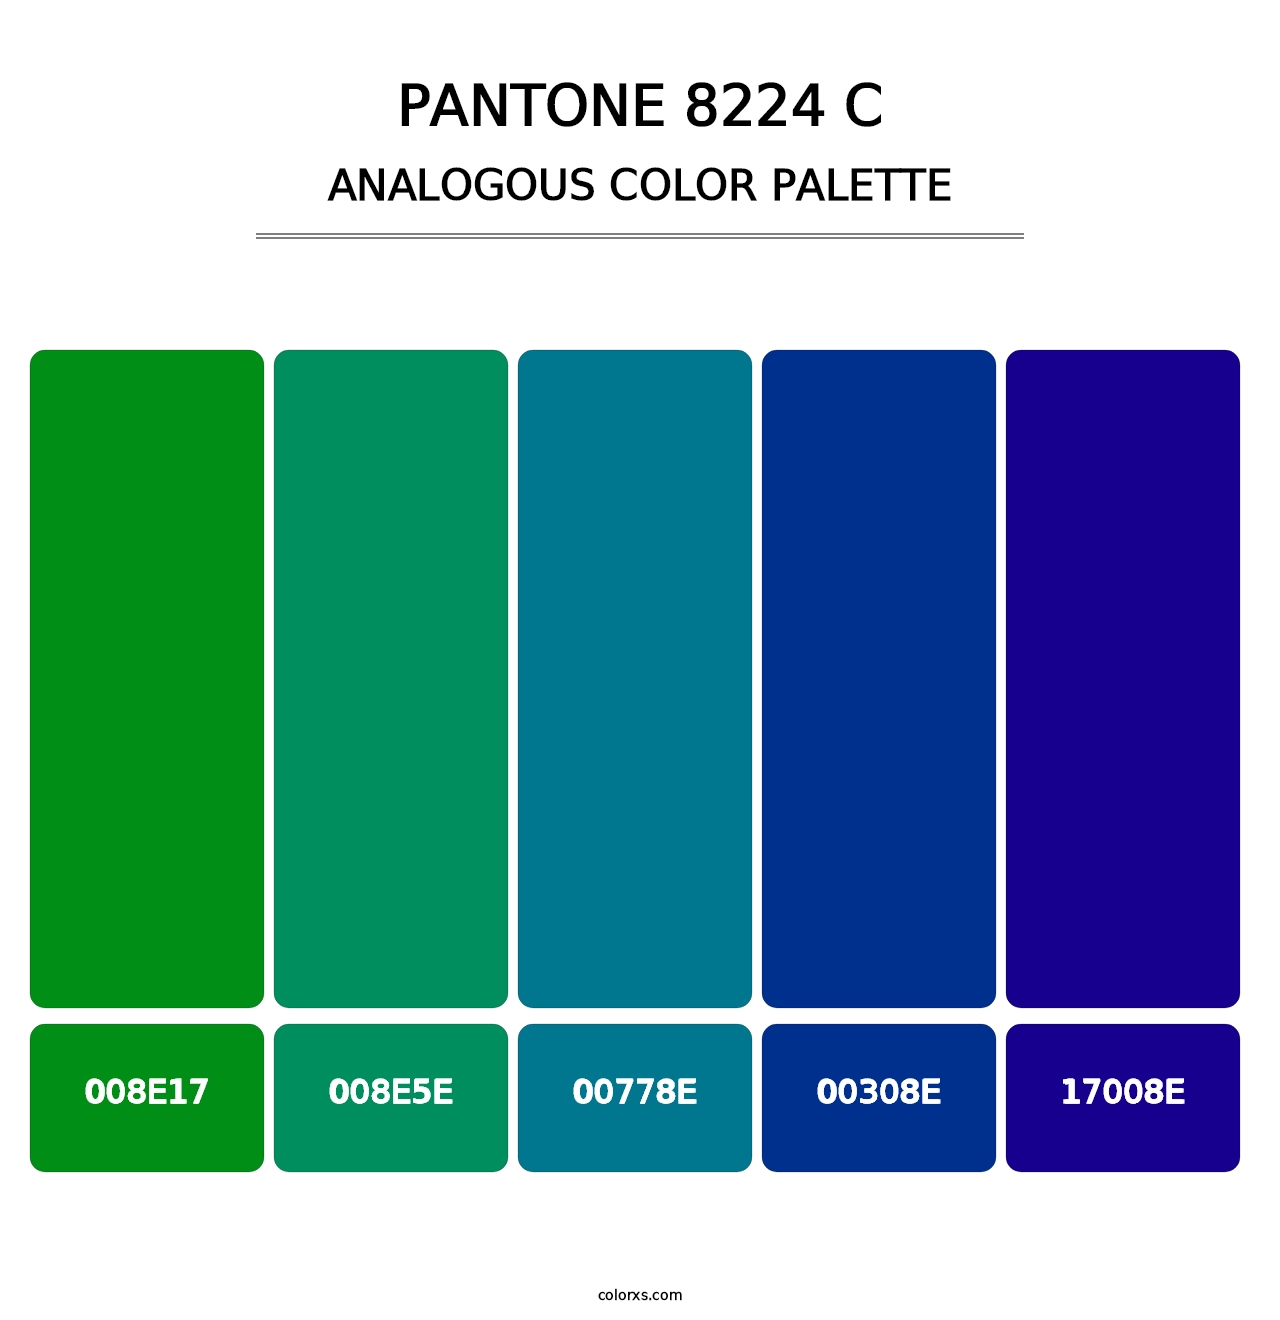 PANTONE 8224 C - Analogous Color Palette